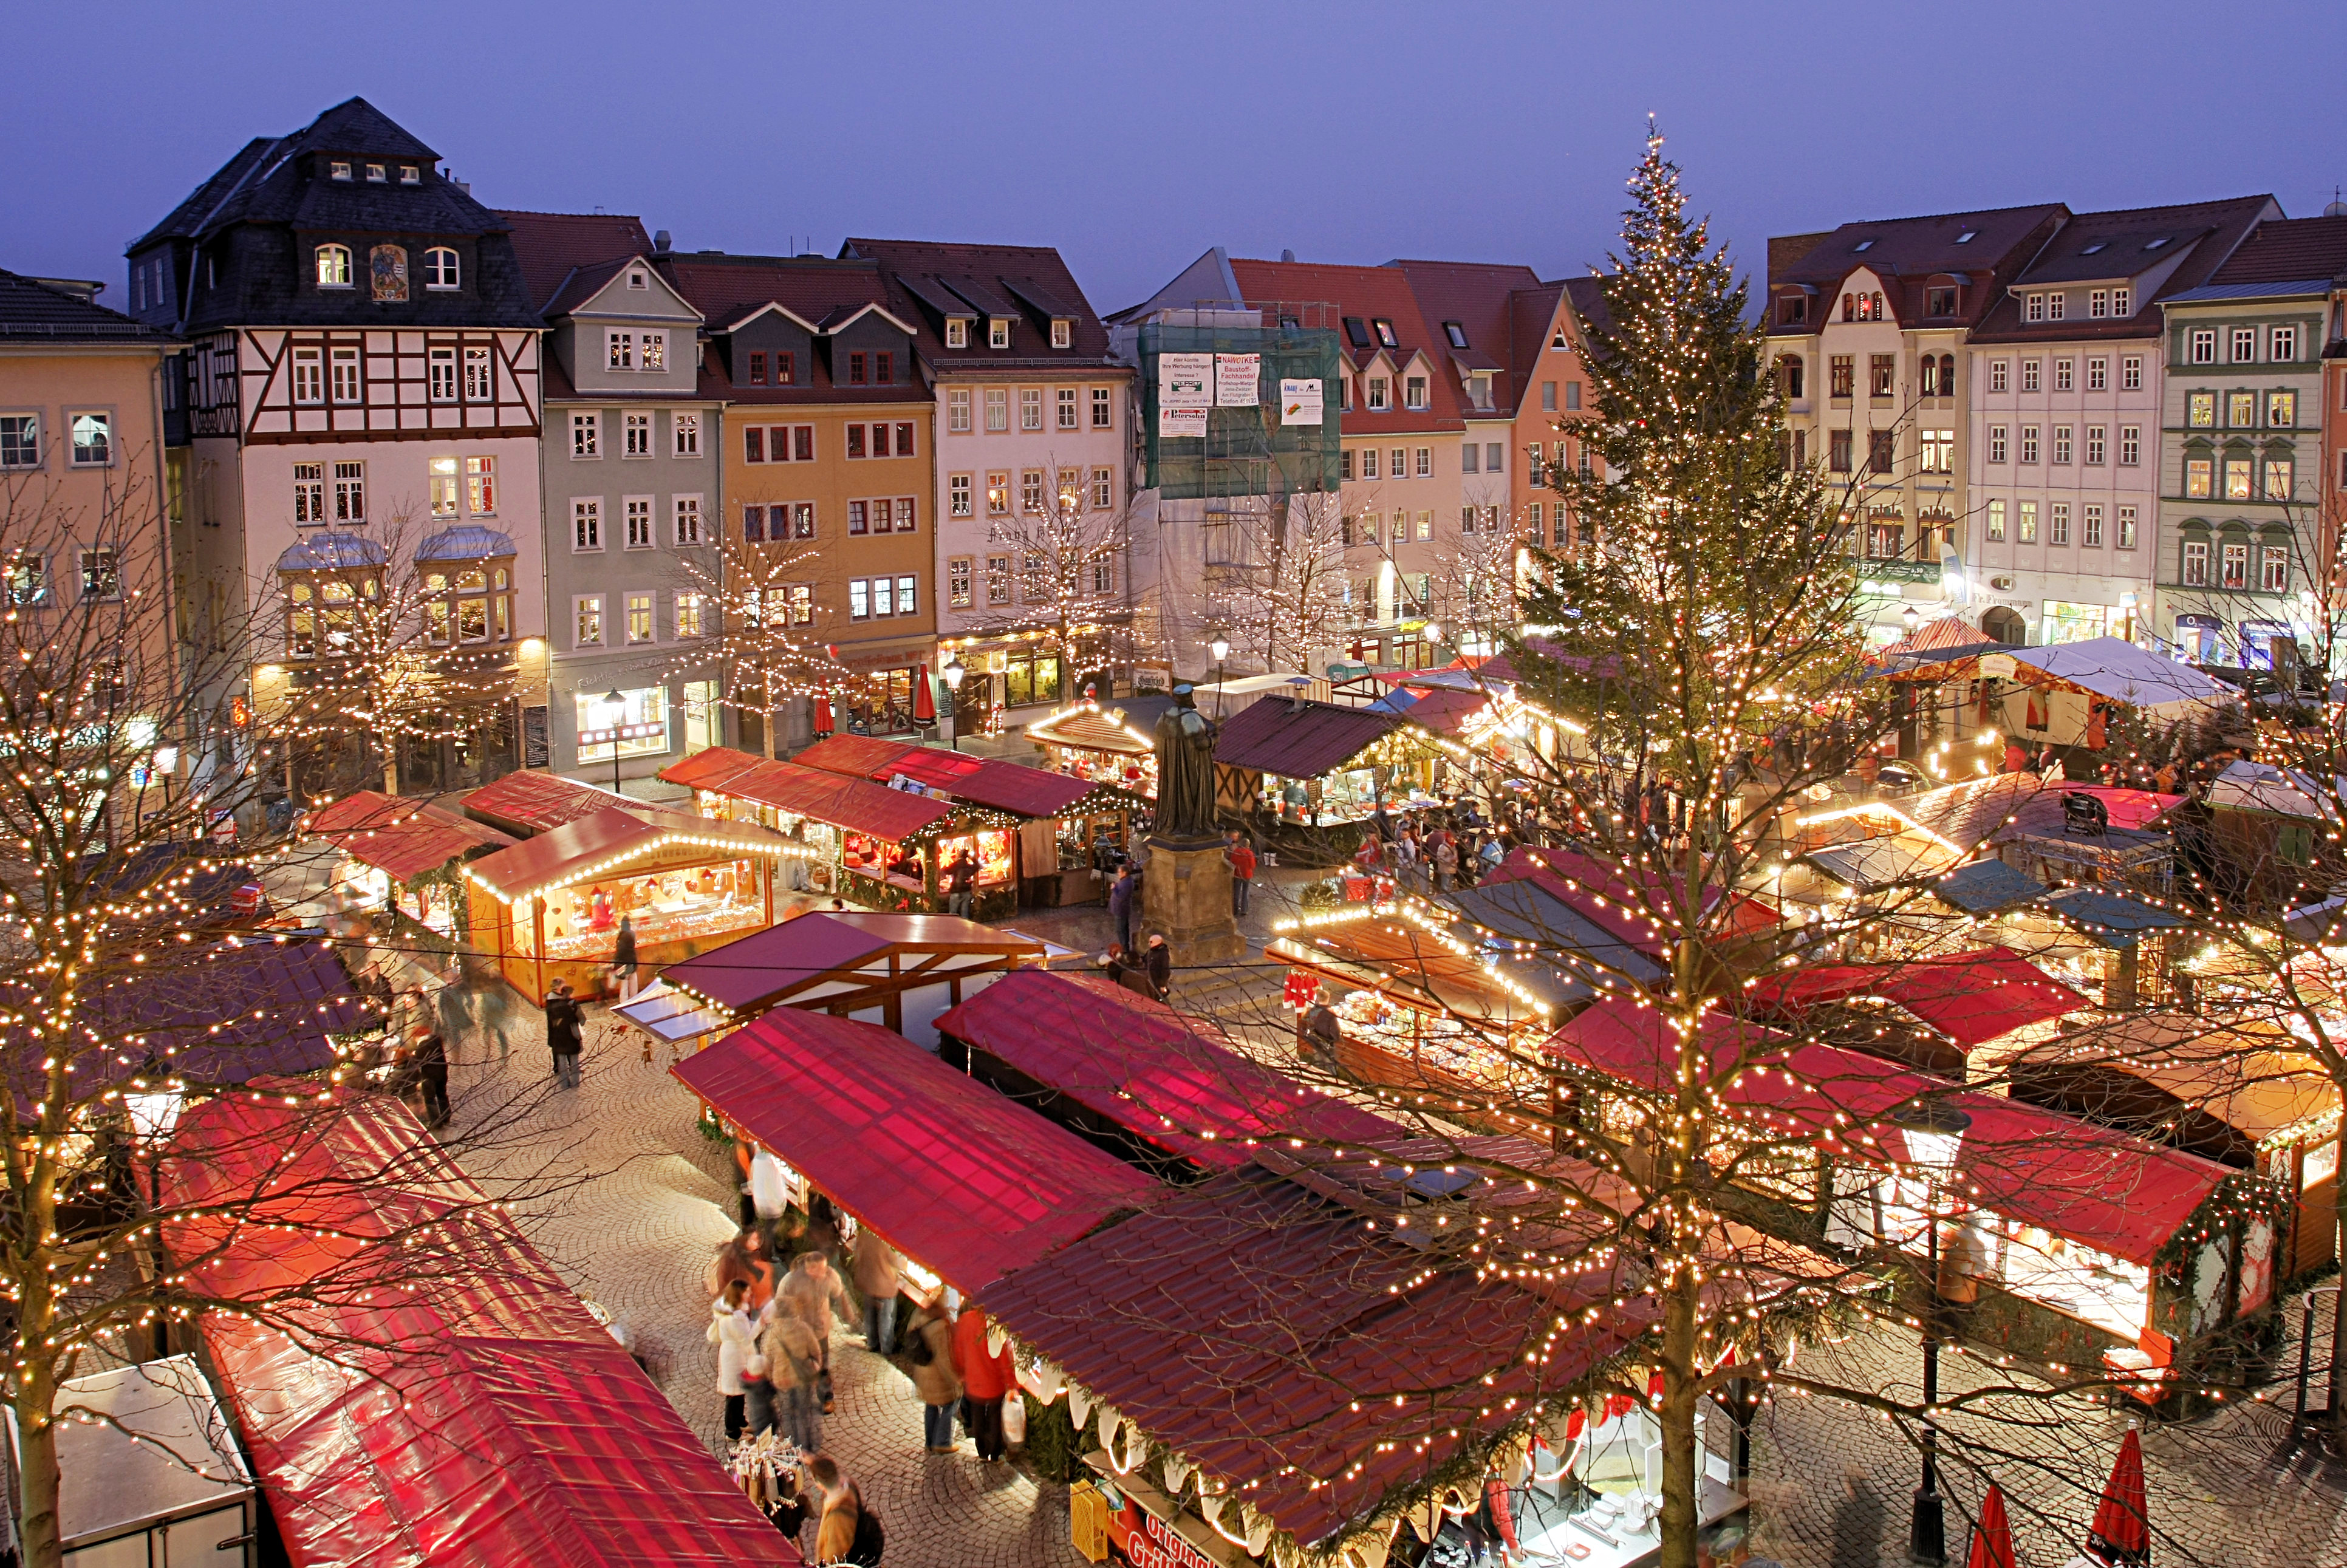 Weihnachtsmarkt auf dem Jenaer Marktplatz